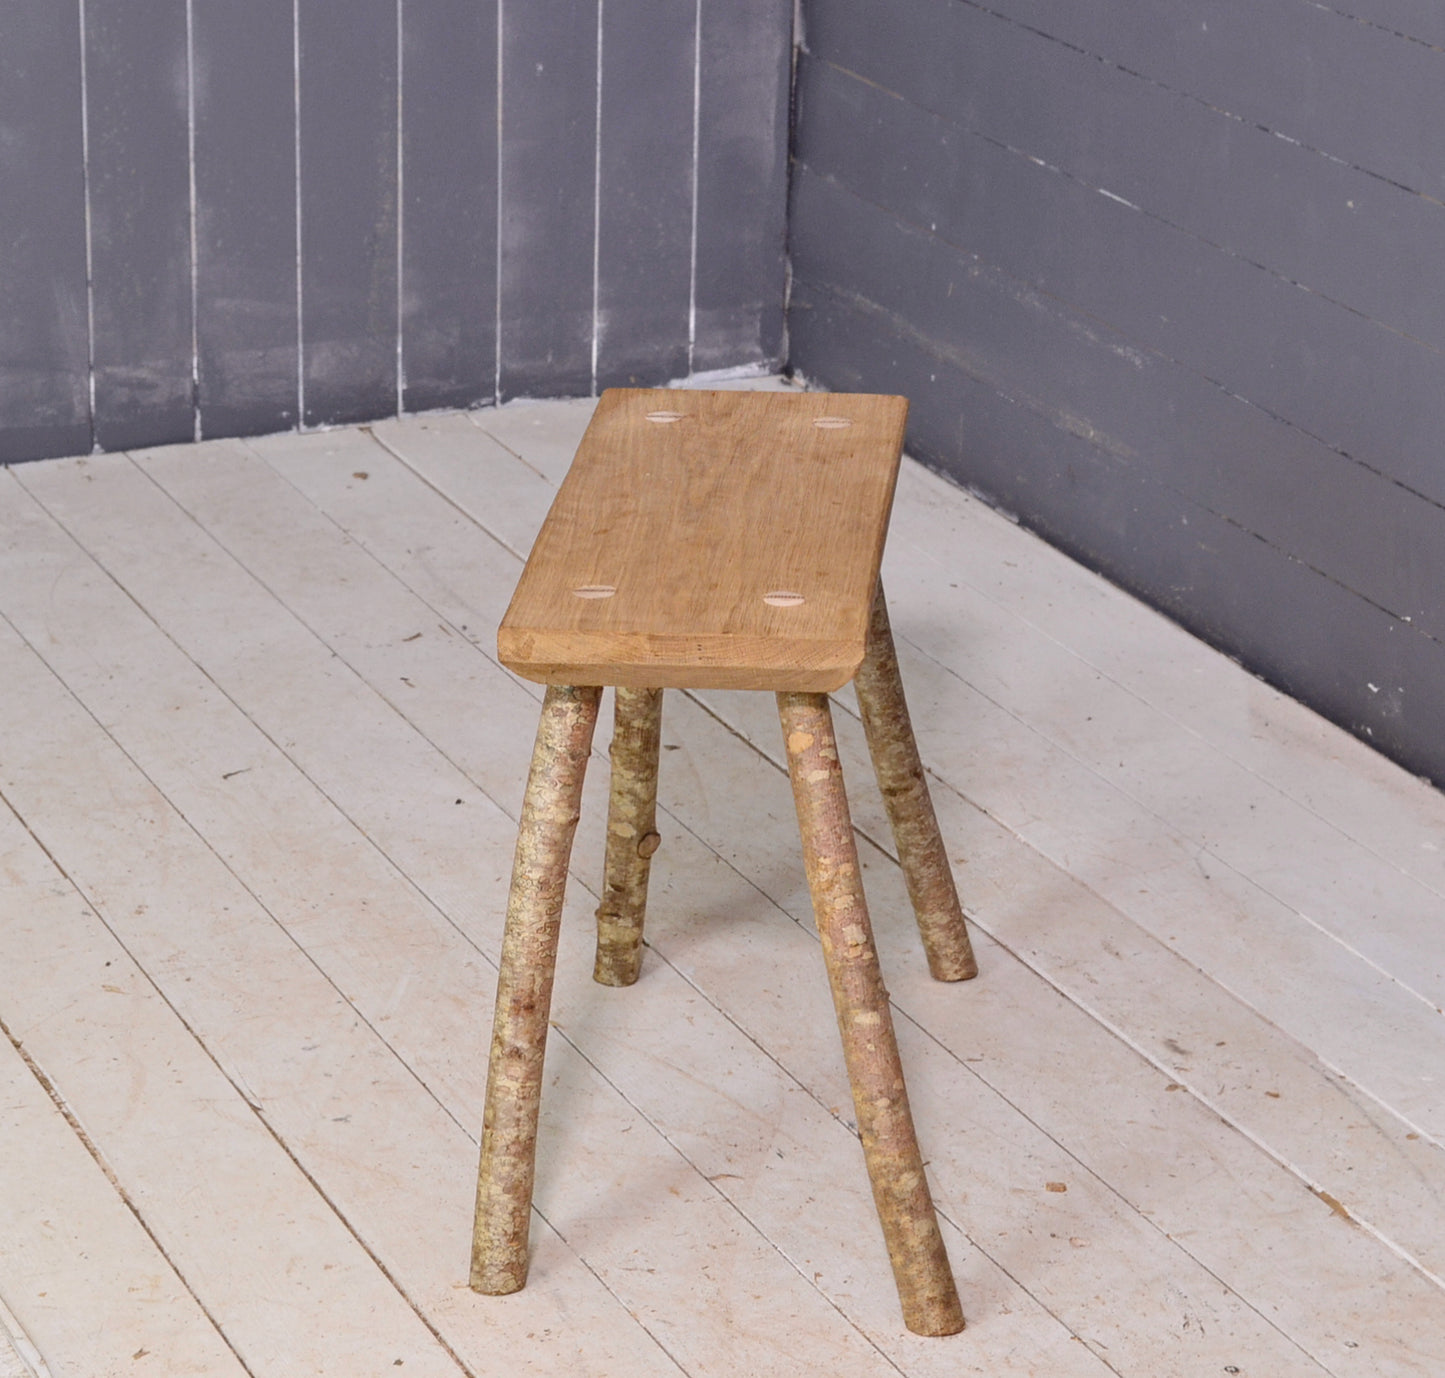 Wooden stool, oak, with hazel legs, end of sofa